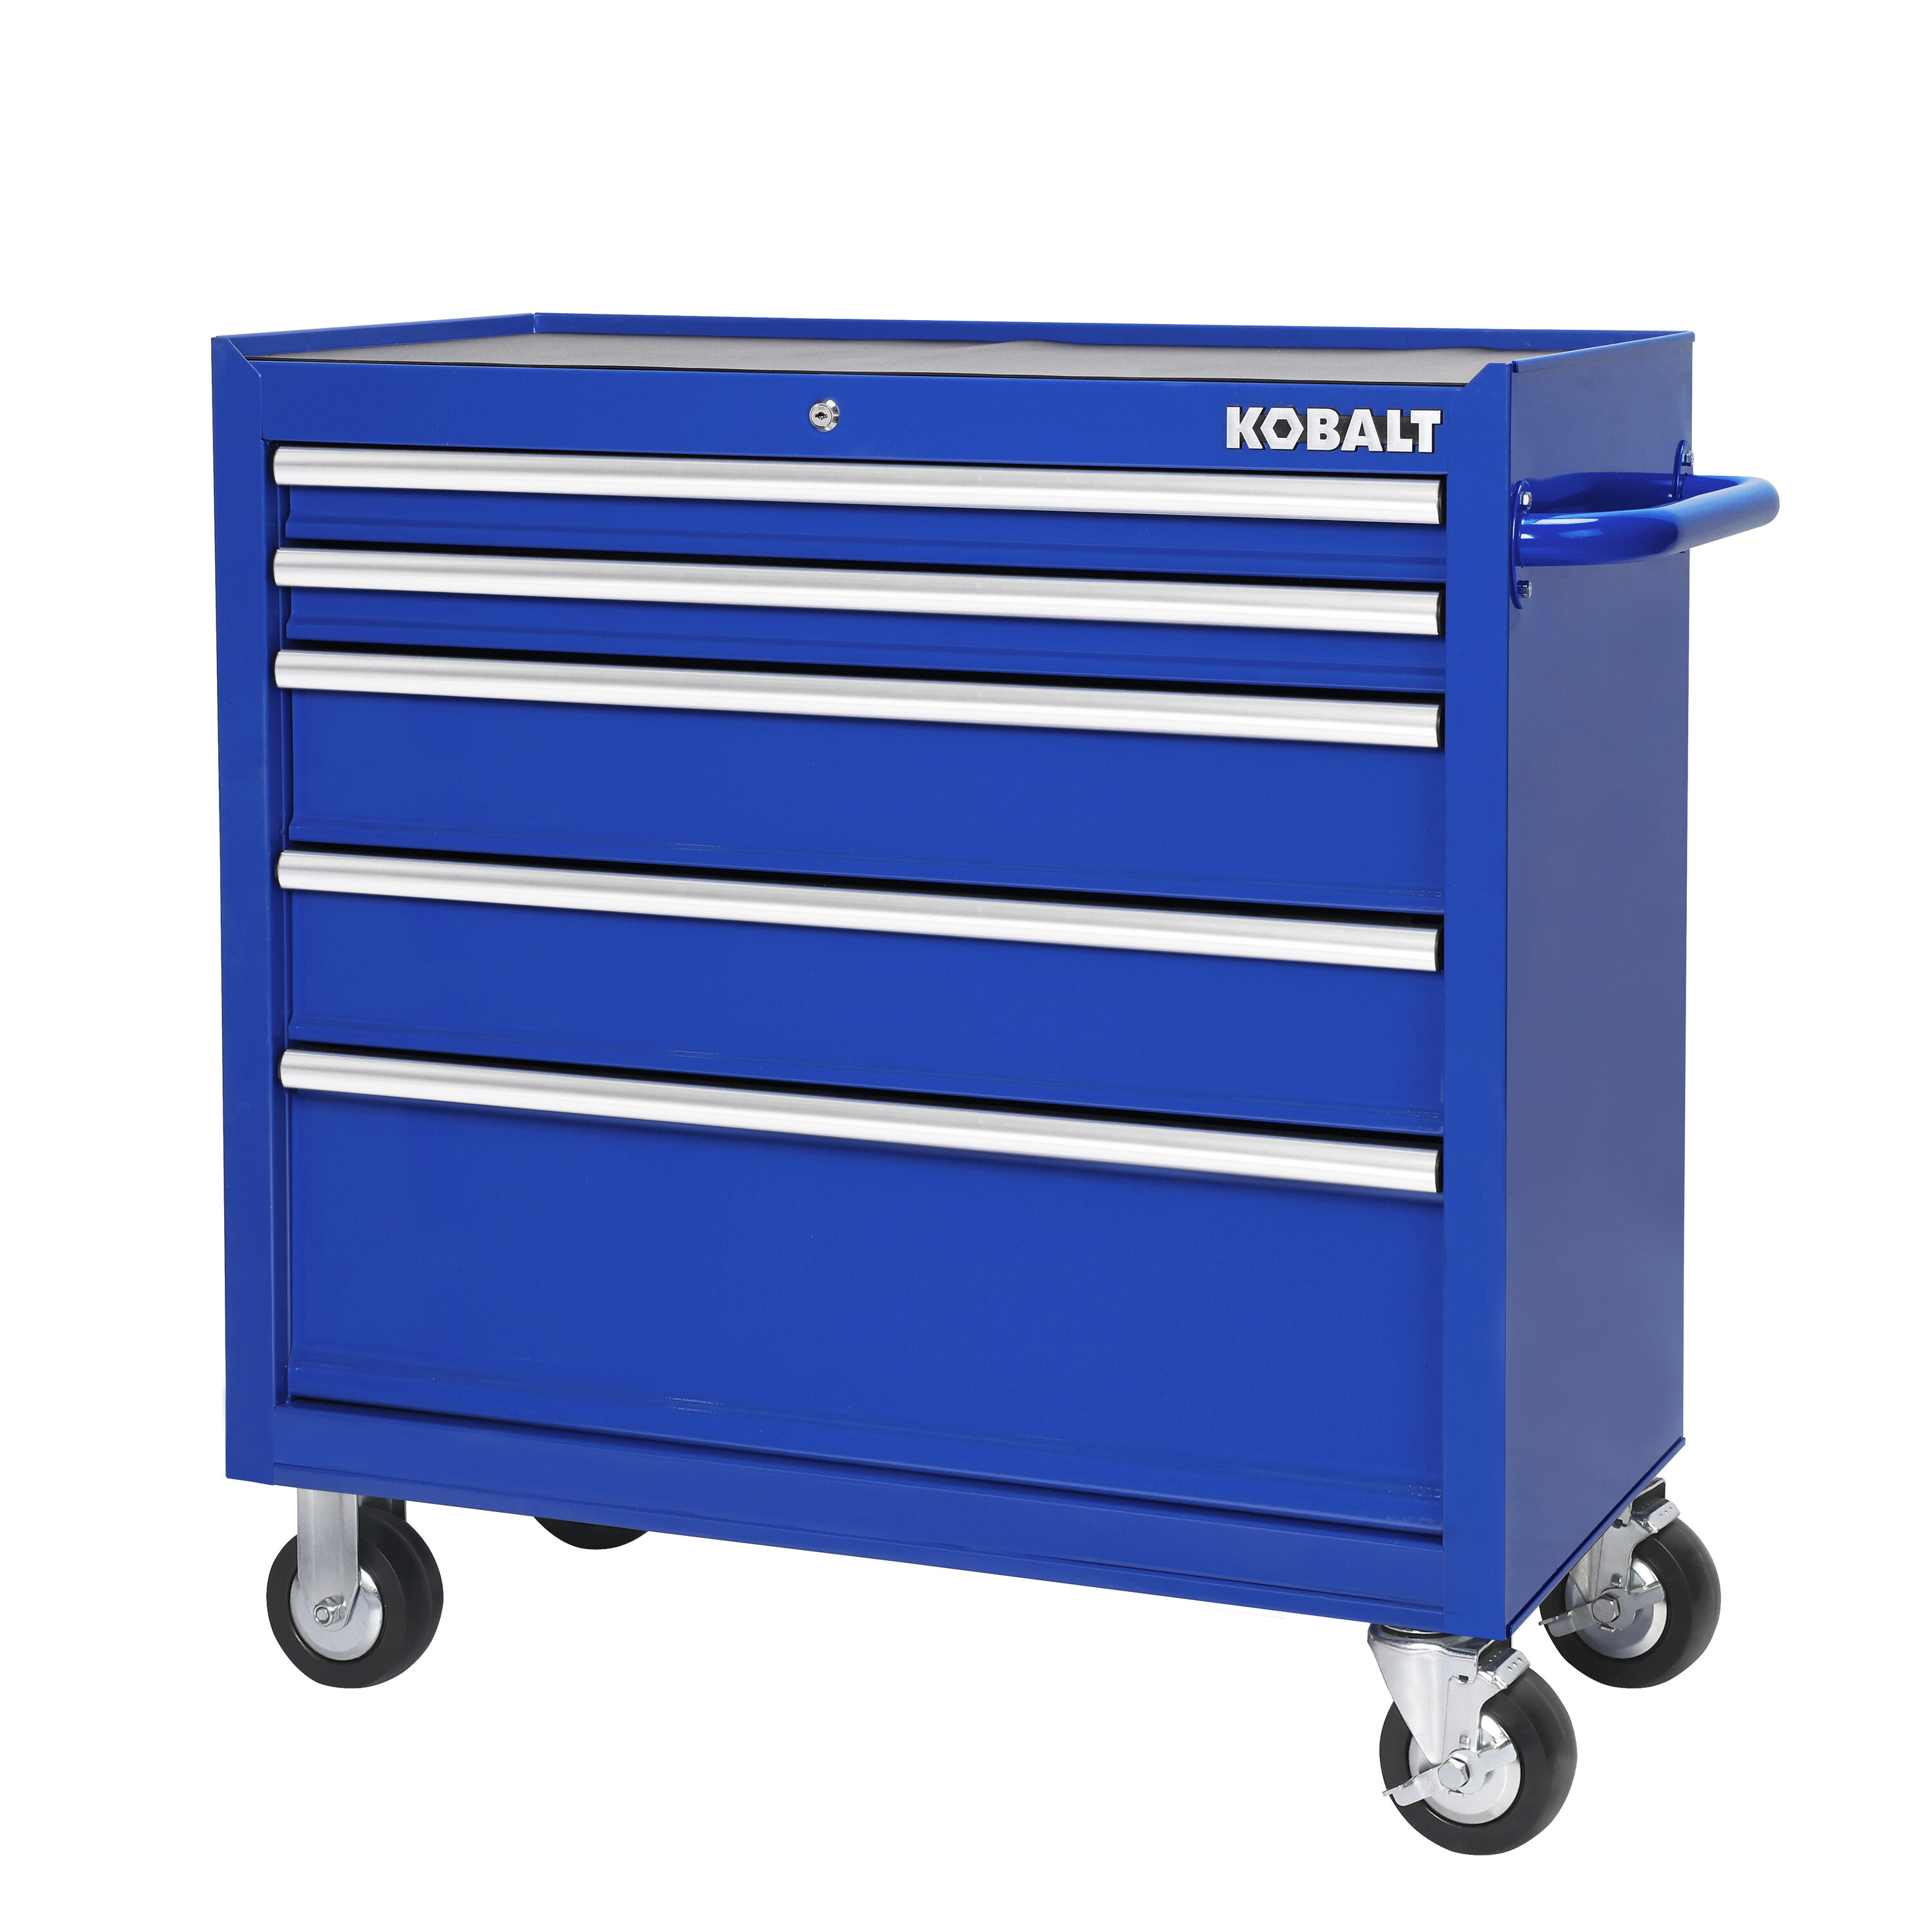 Kobalt 36in W x 37.8in H 5Drawer Steel Rolling Tool (Blue